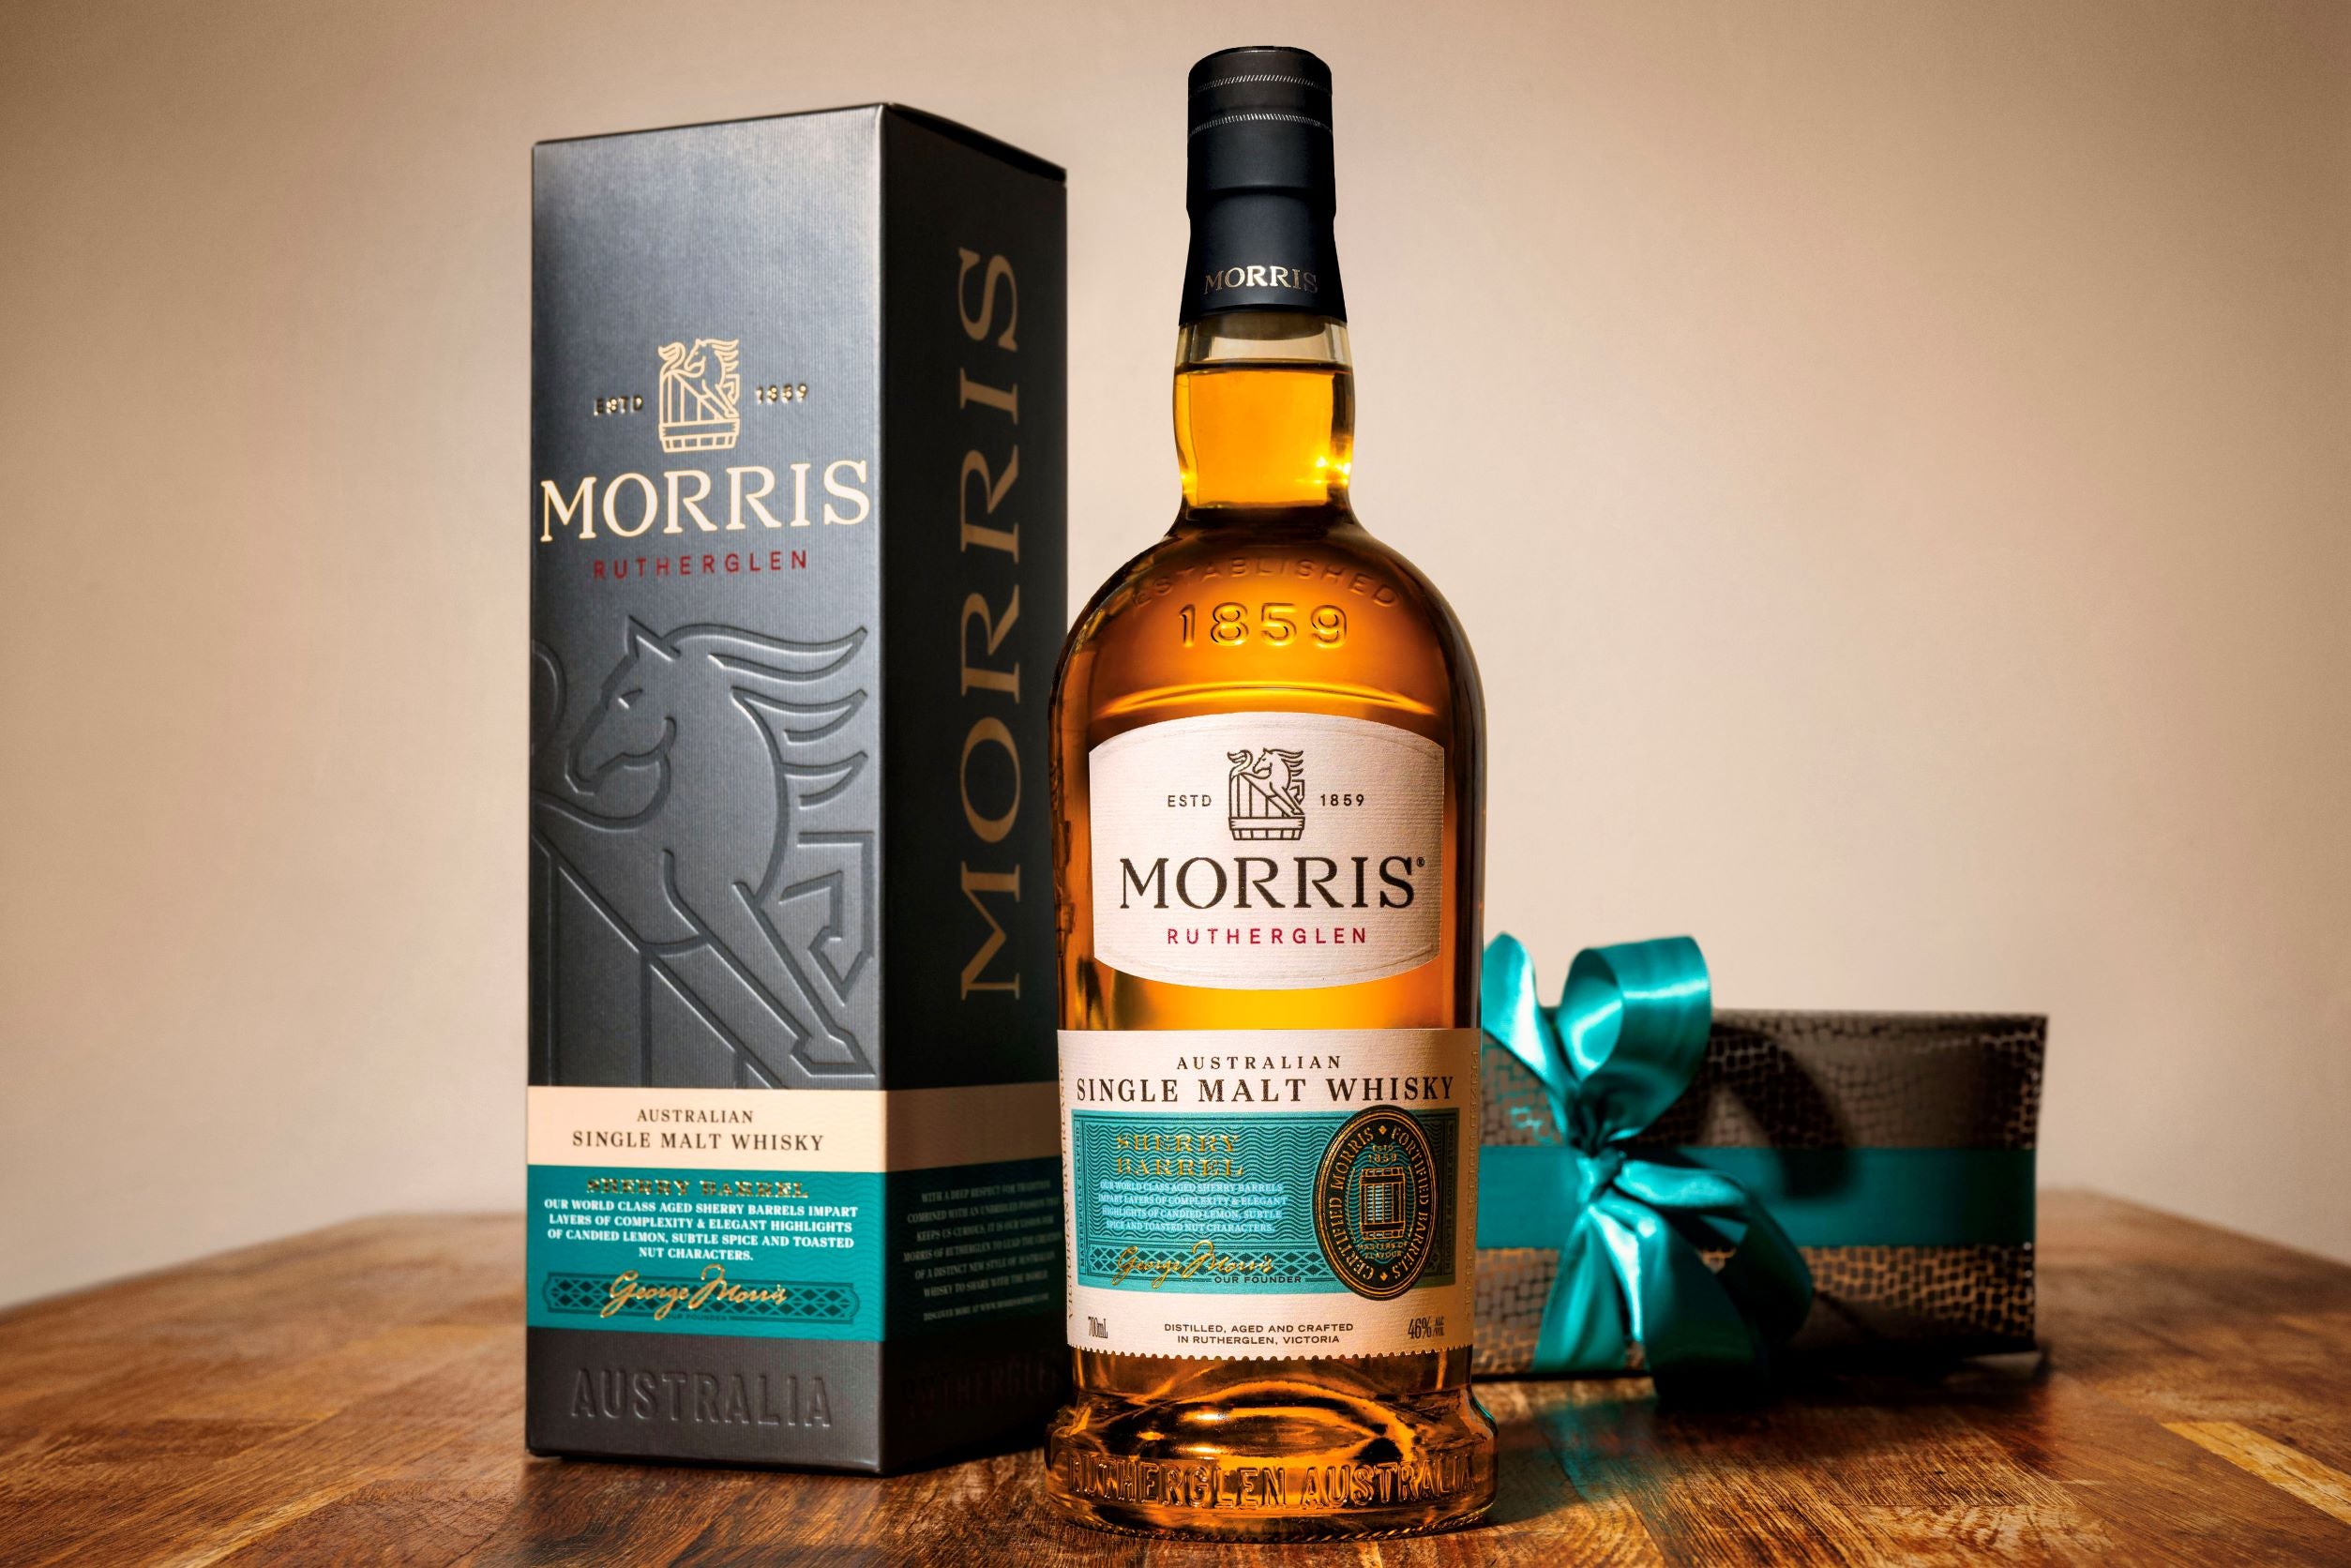 Sherried whisky joins Morris core range